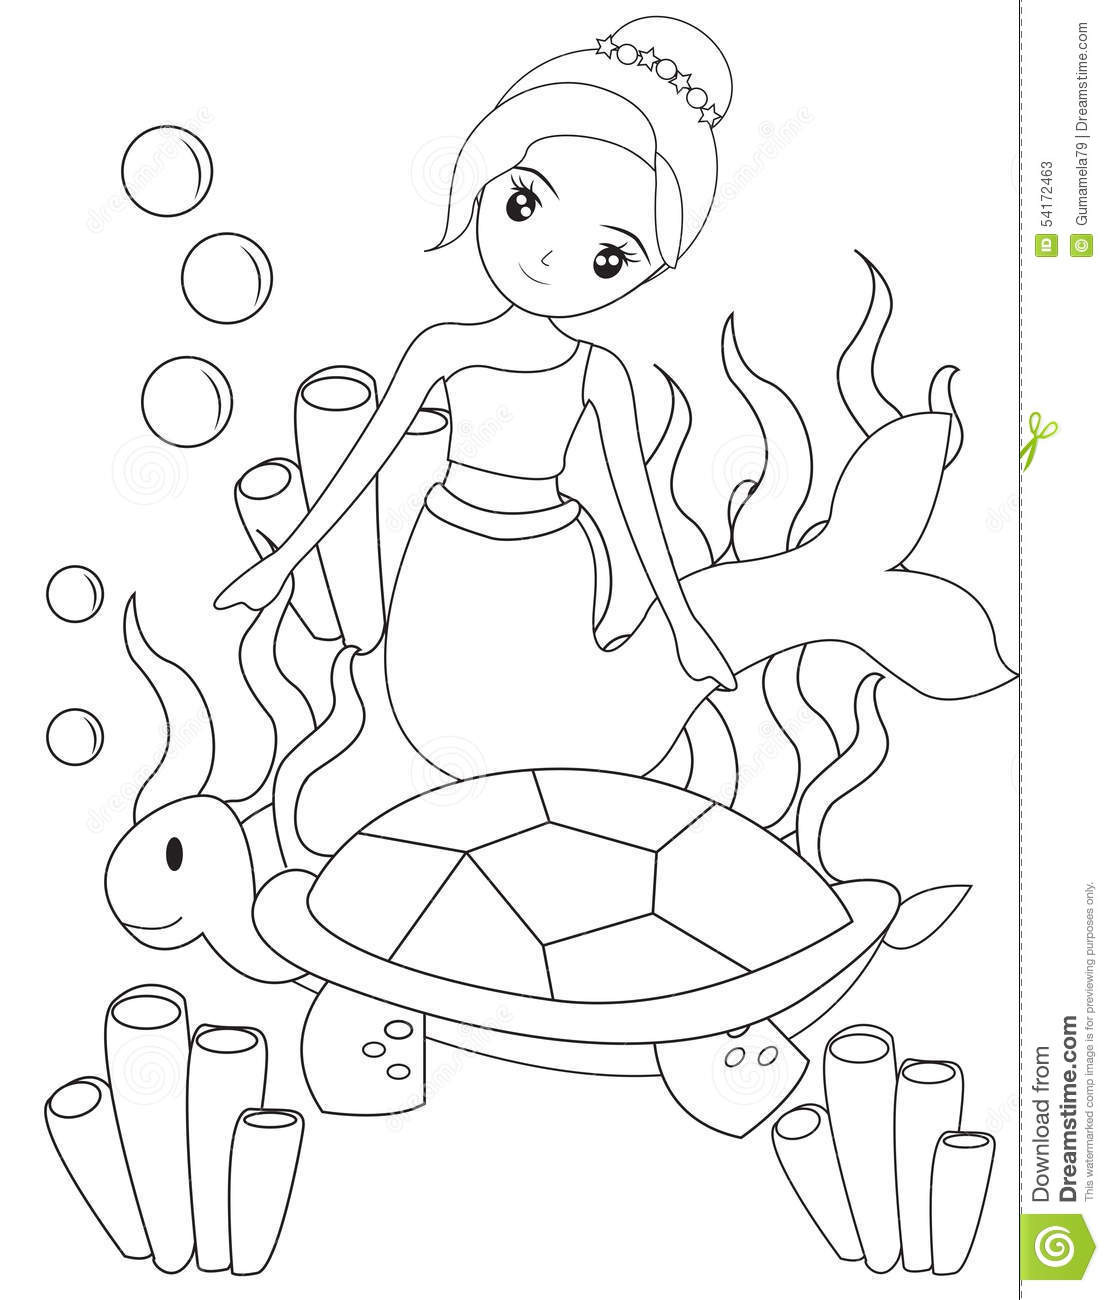 Coloring Pages For Kids Mermaid
 Mermaid Drawing at GetDrawings